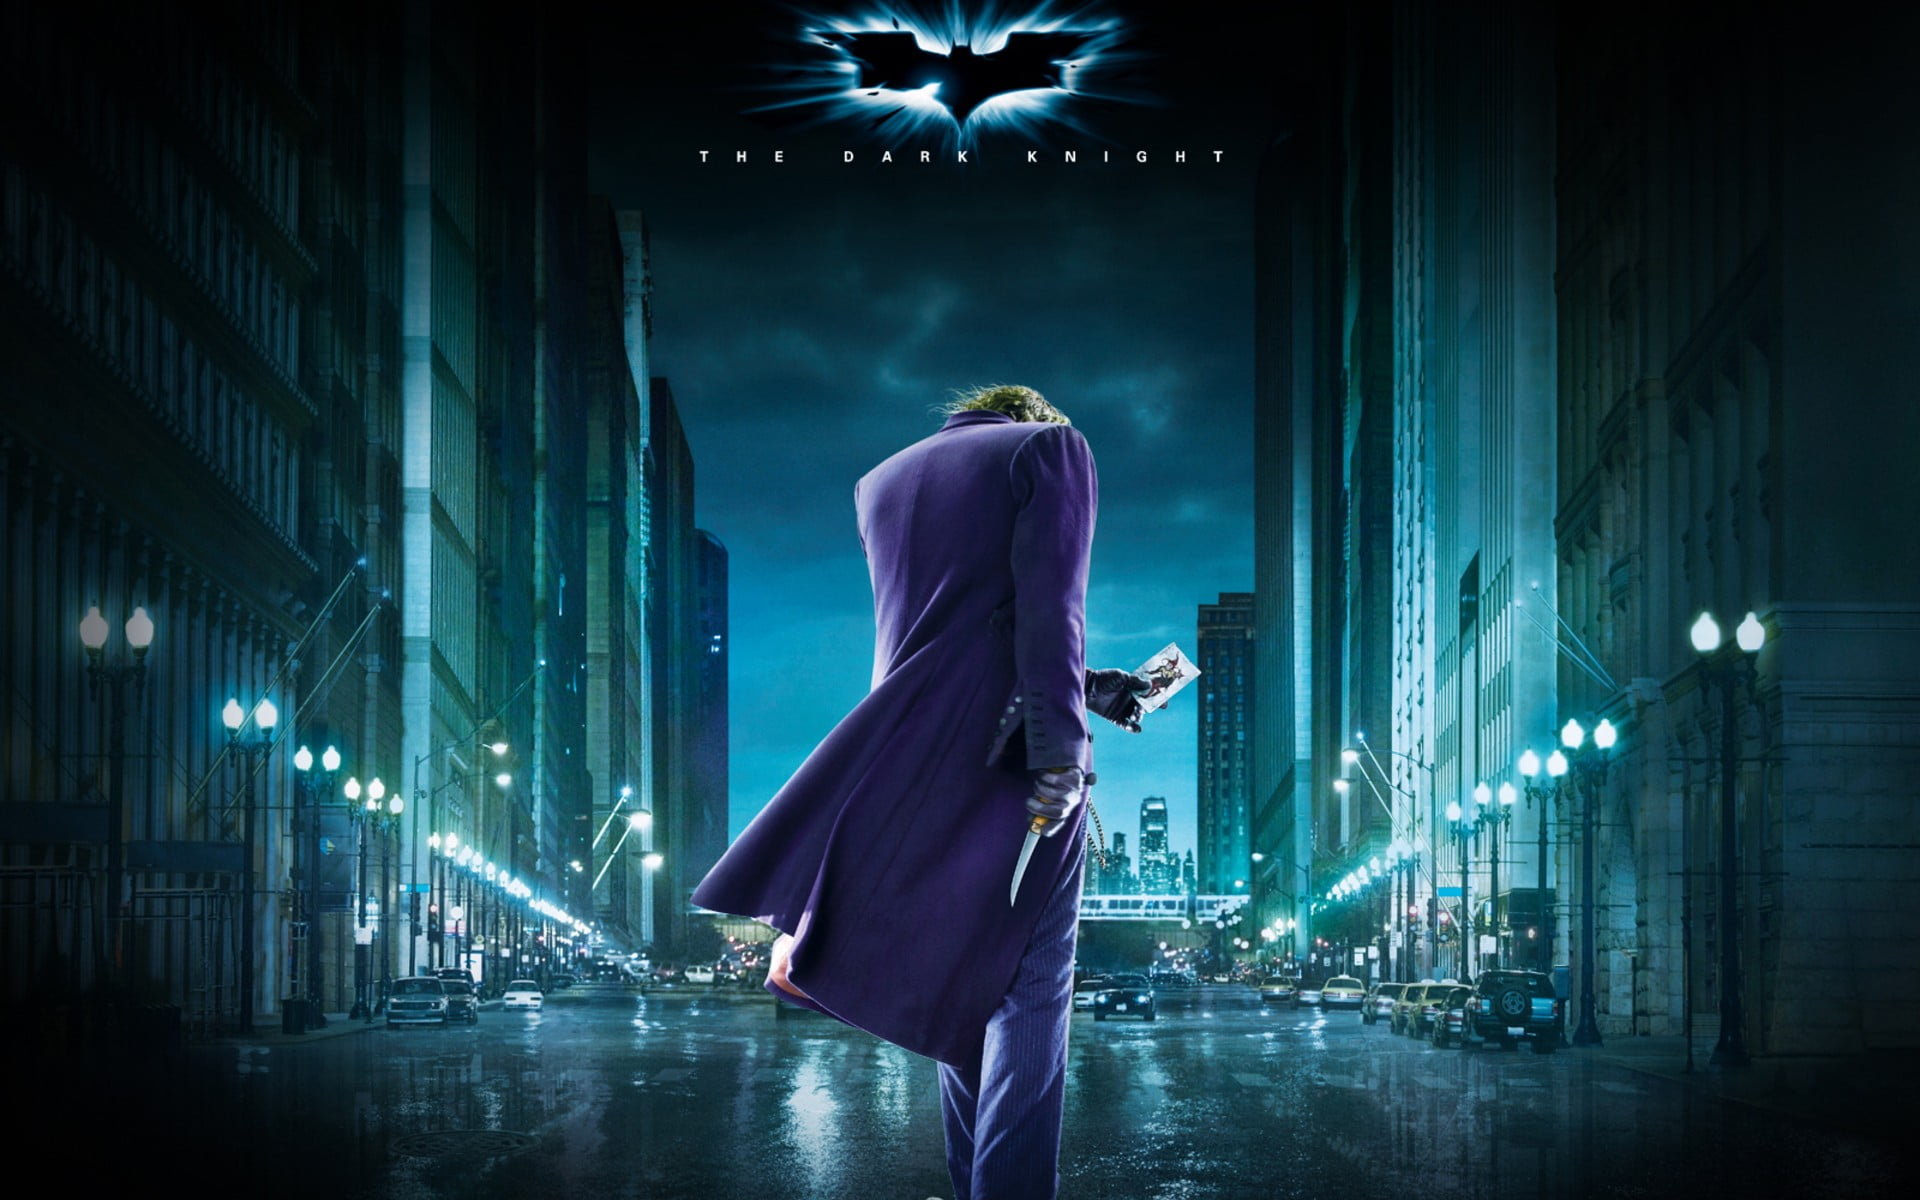 Joker The Dark Knight Poster